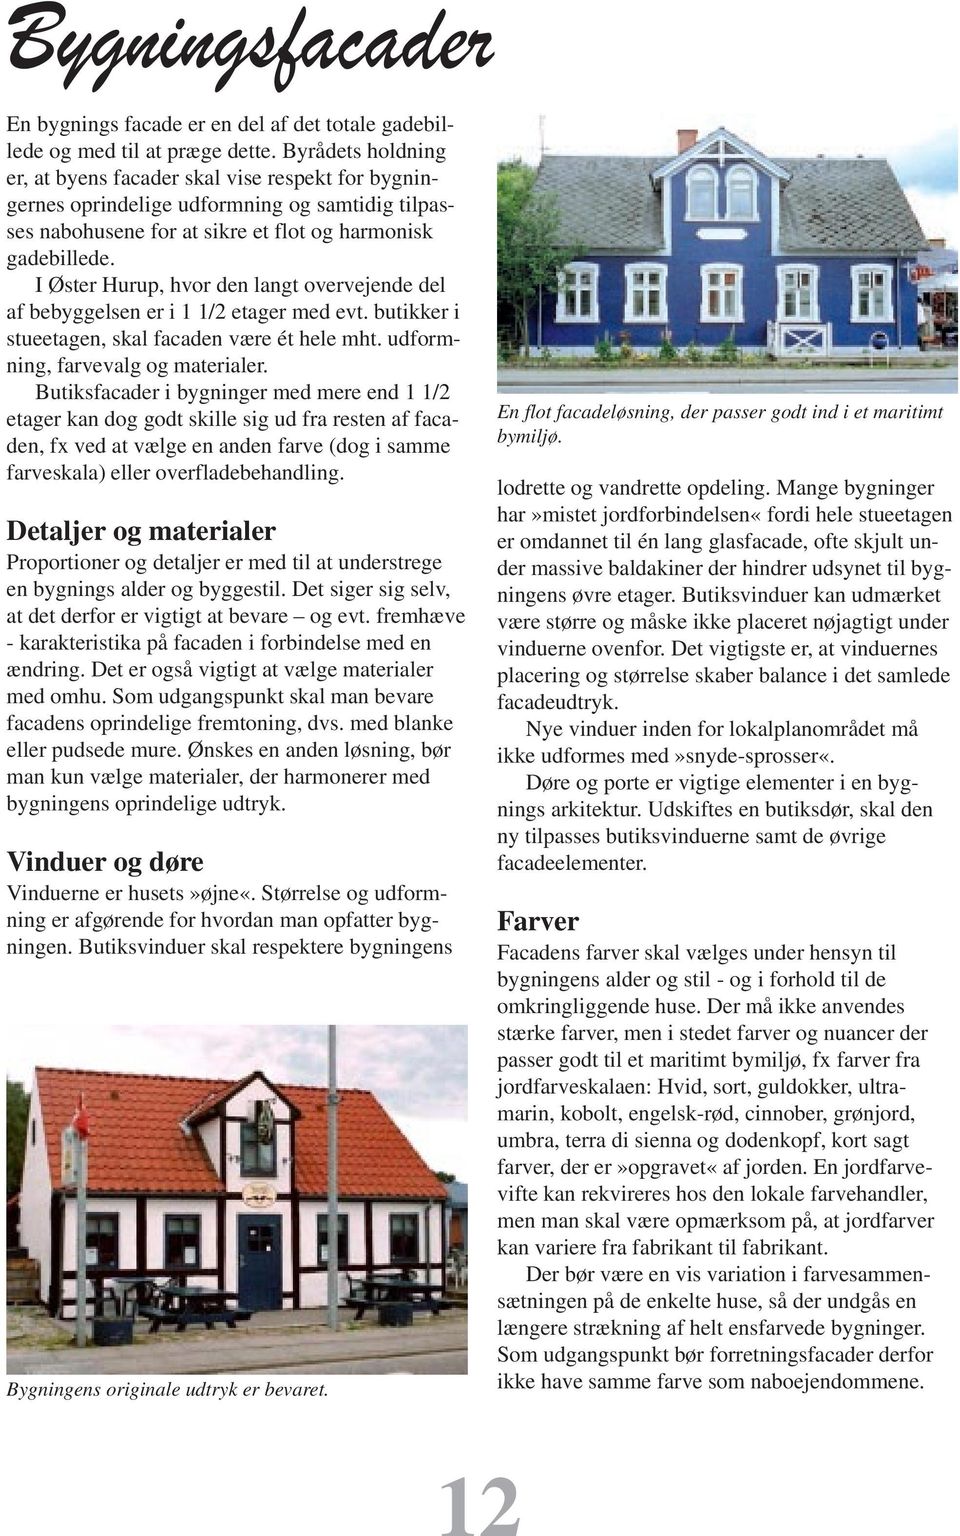 I Øster Hurup, hvor den langt overvejende del af bebyggelsen er i 1 1/2 etager med evt. butikker i stueetagen, skal facaden være ét hele mht. udformning, farvevalg og materialer.